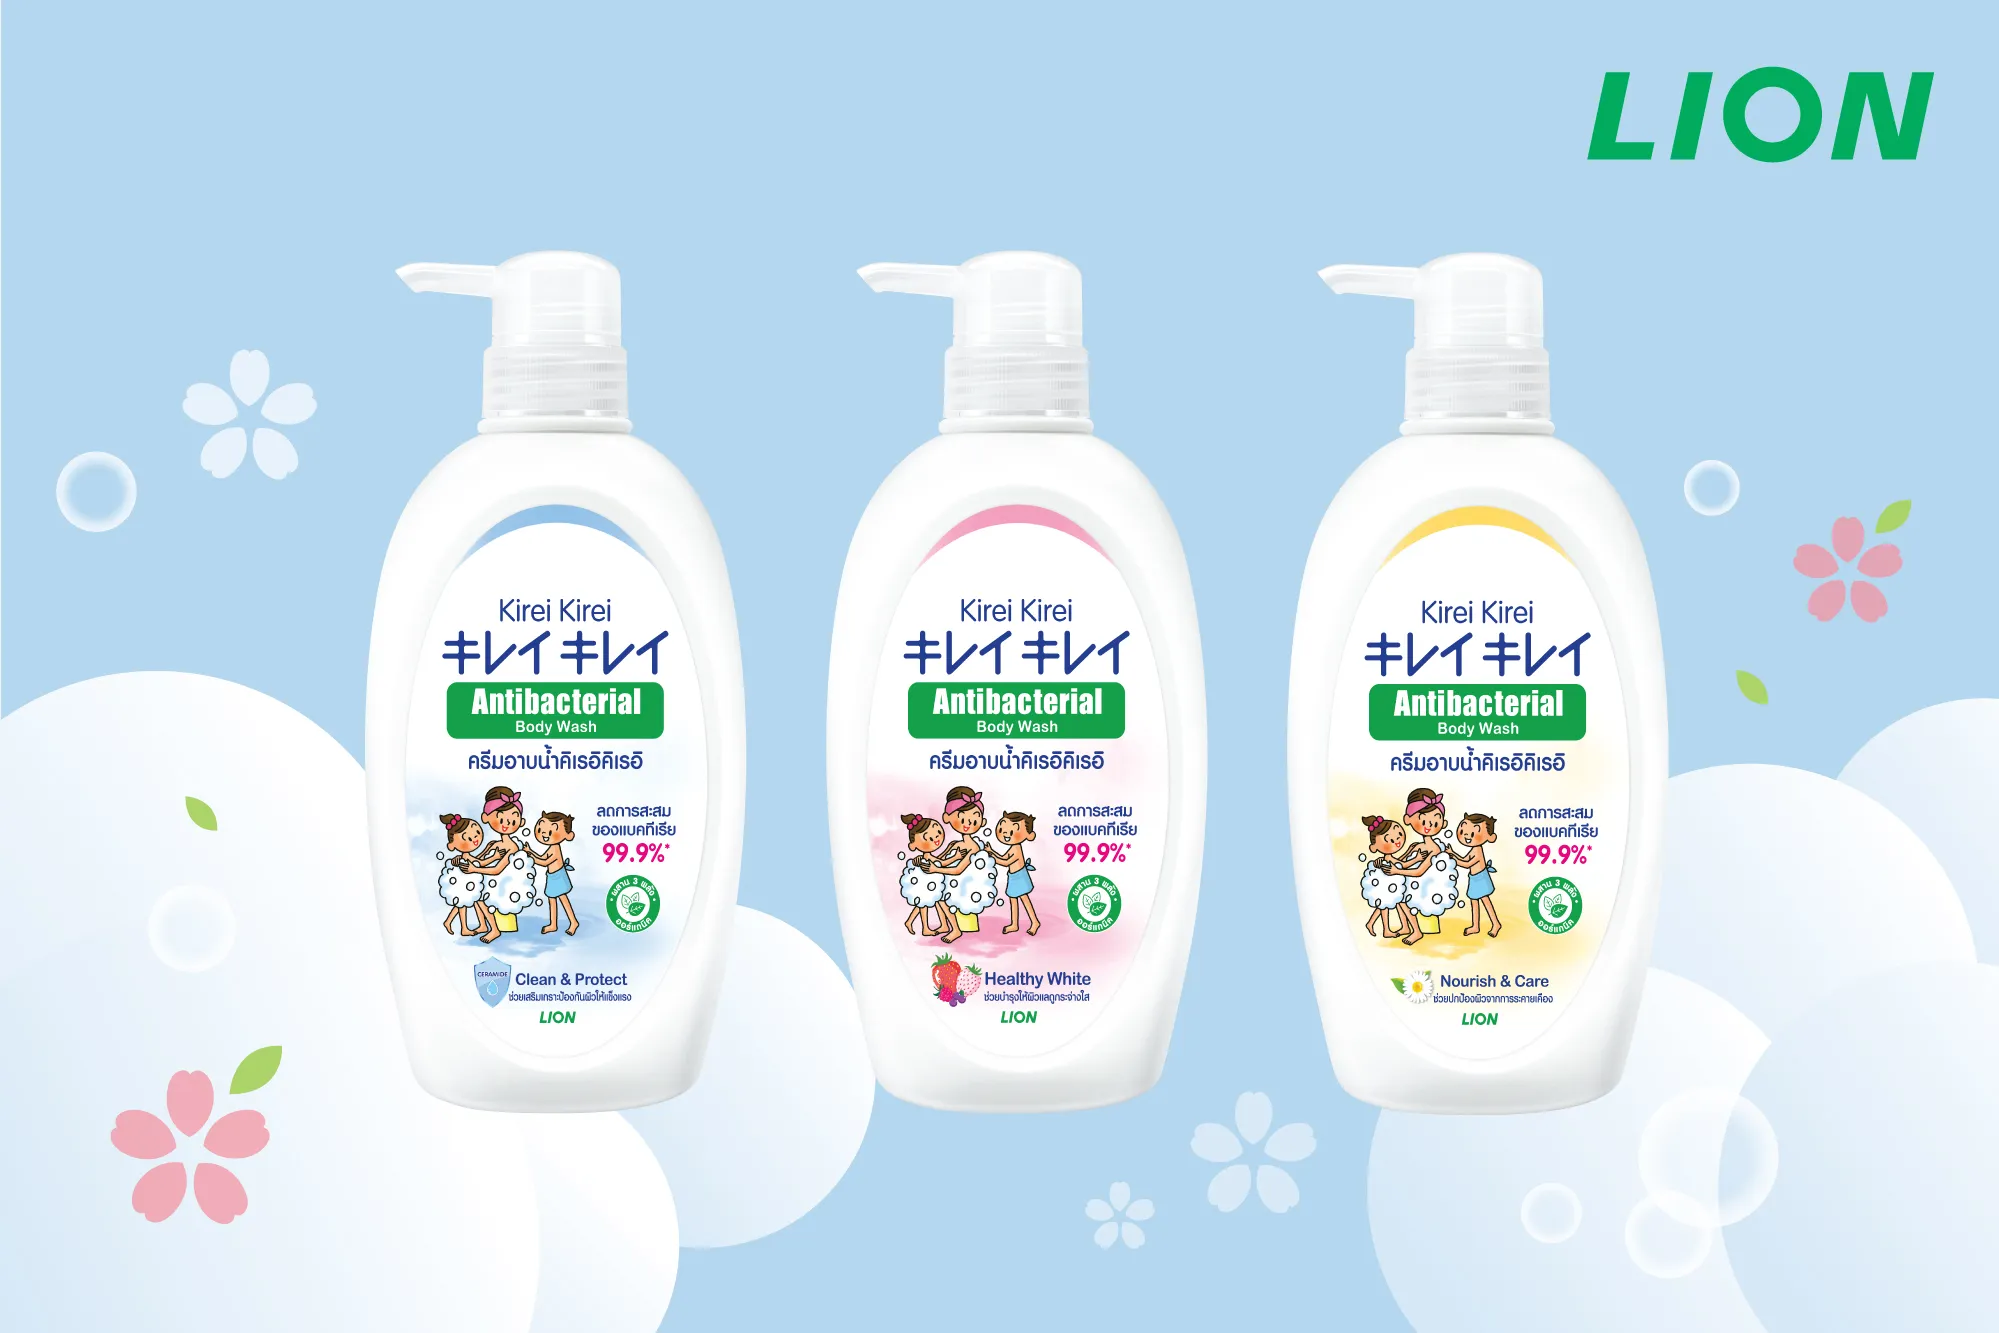 Kirei Kirei Antibacterial Body Wash สูตร Clean & Protect 500ml /  คิเรอิคิเรอิ แอนตี้แบคทีเรีย บอดี้ วอชสูตร คลีน แอนด์ โพรเทค 500มล |  Lazada.co.th